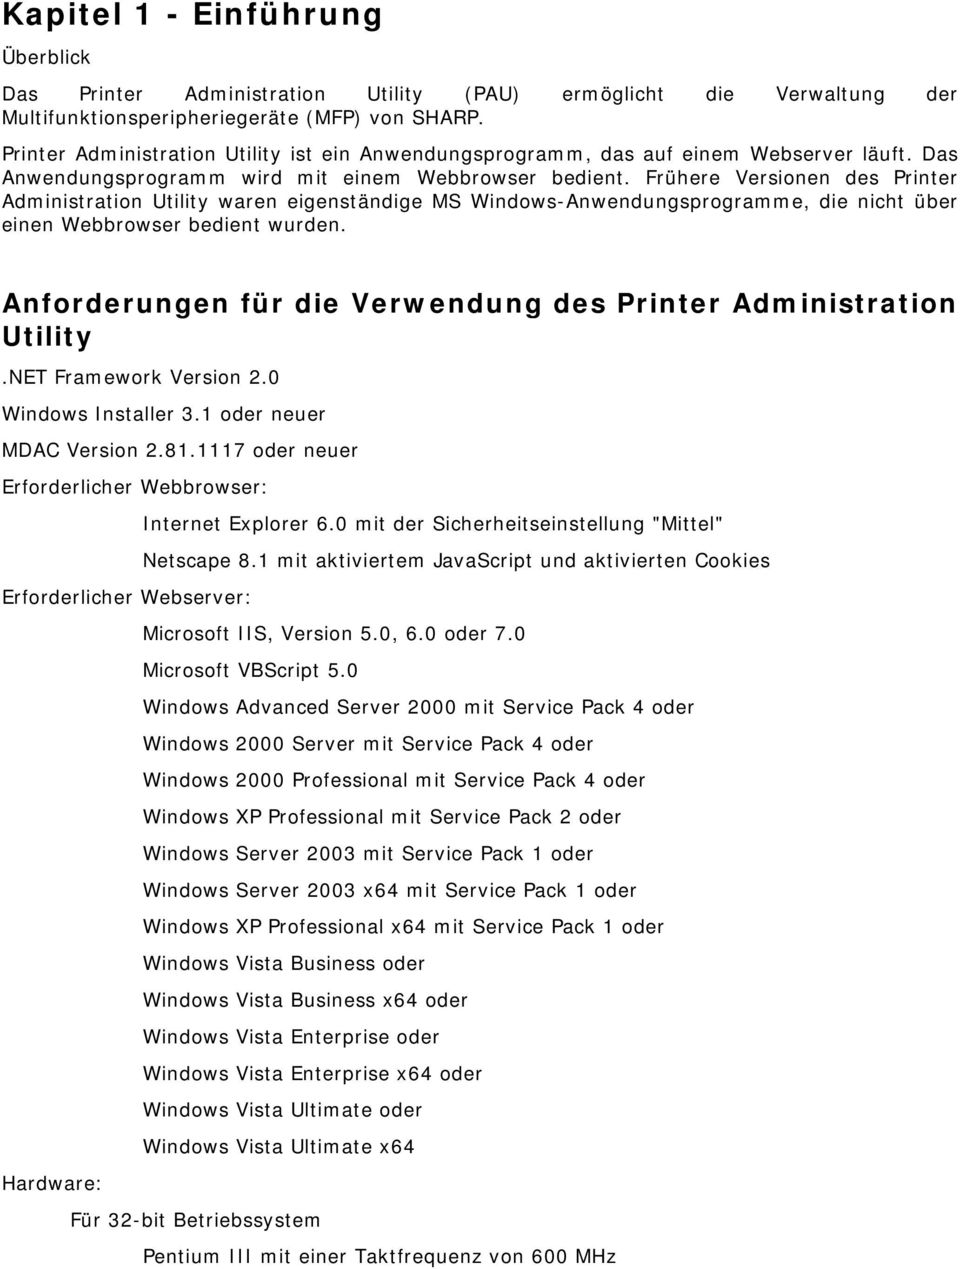 Frühere Versionen des Printer Administration Utility waren eigenständige MS Windows-Anwendungsprogramme, die nicht über einen Webbrowser bedient wurden.